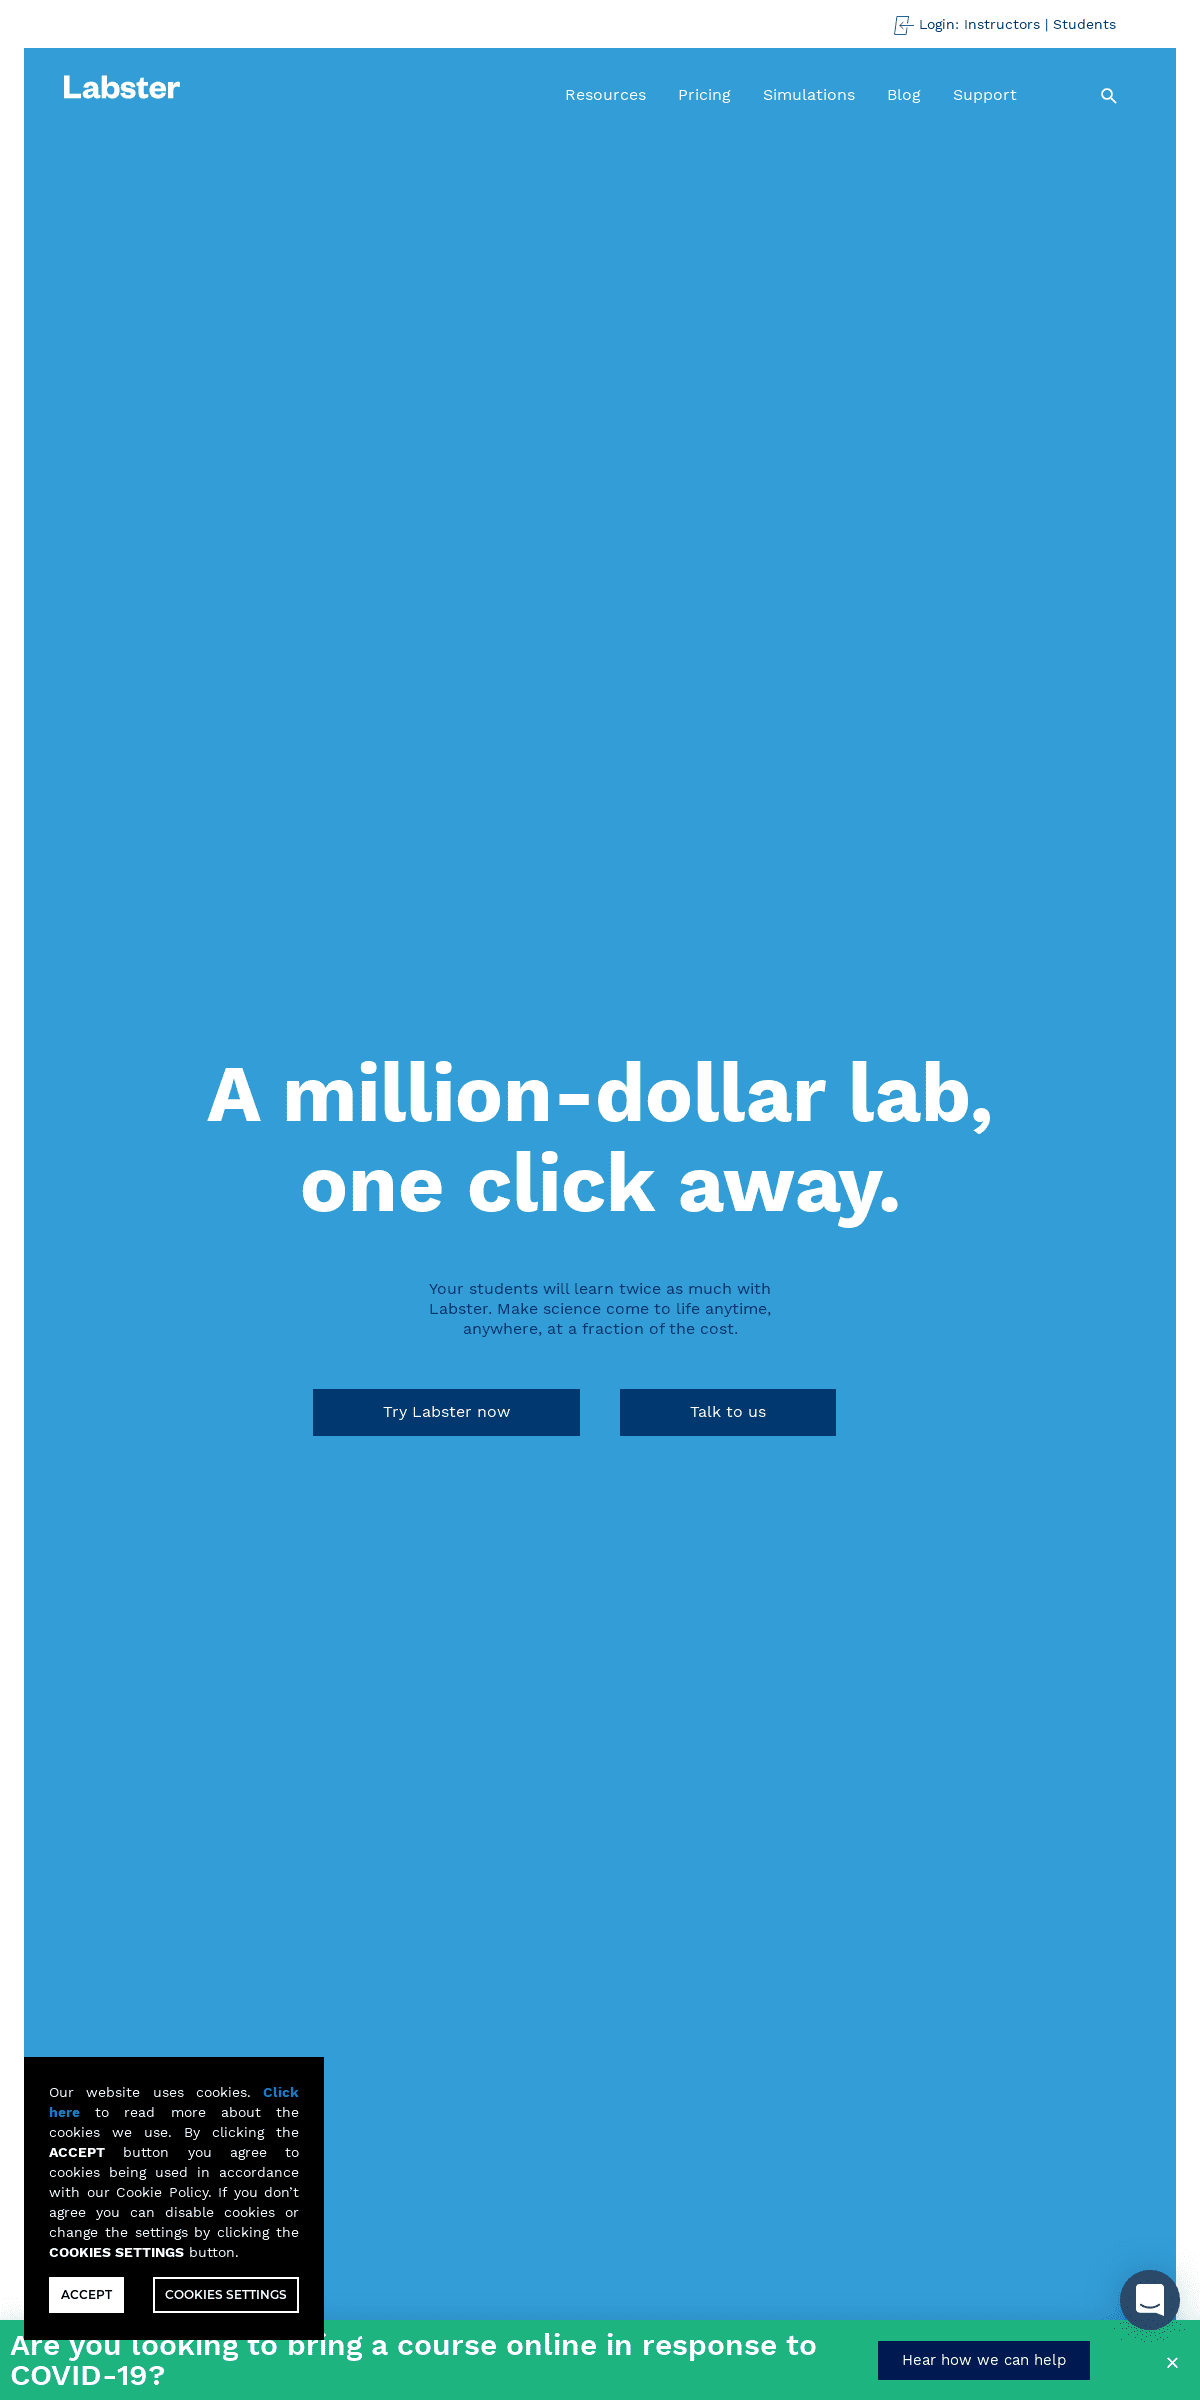 A complete backup of labster.com